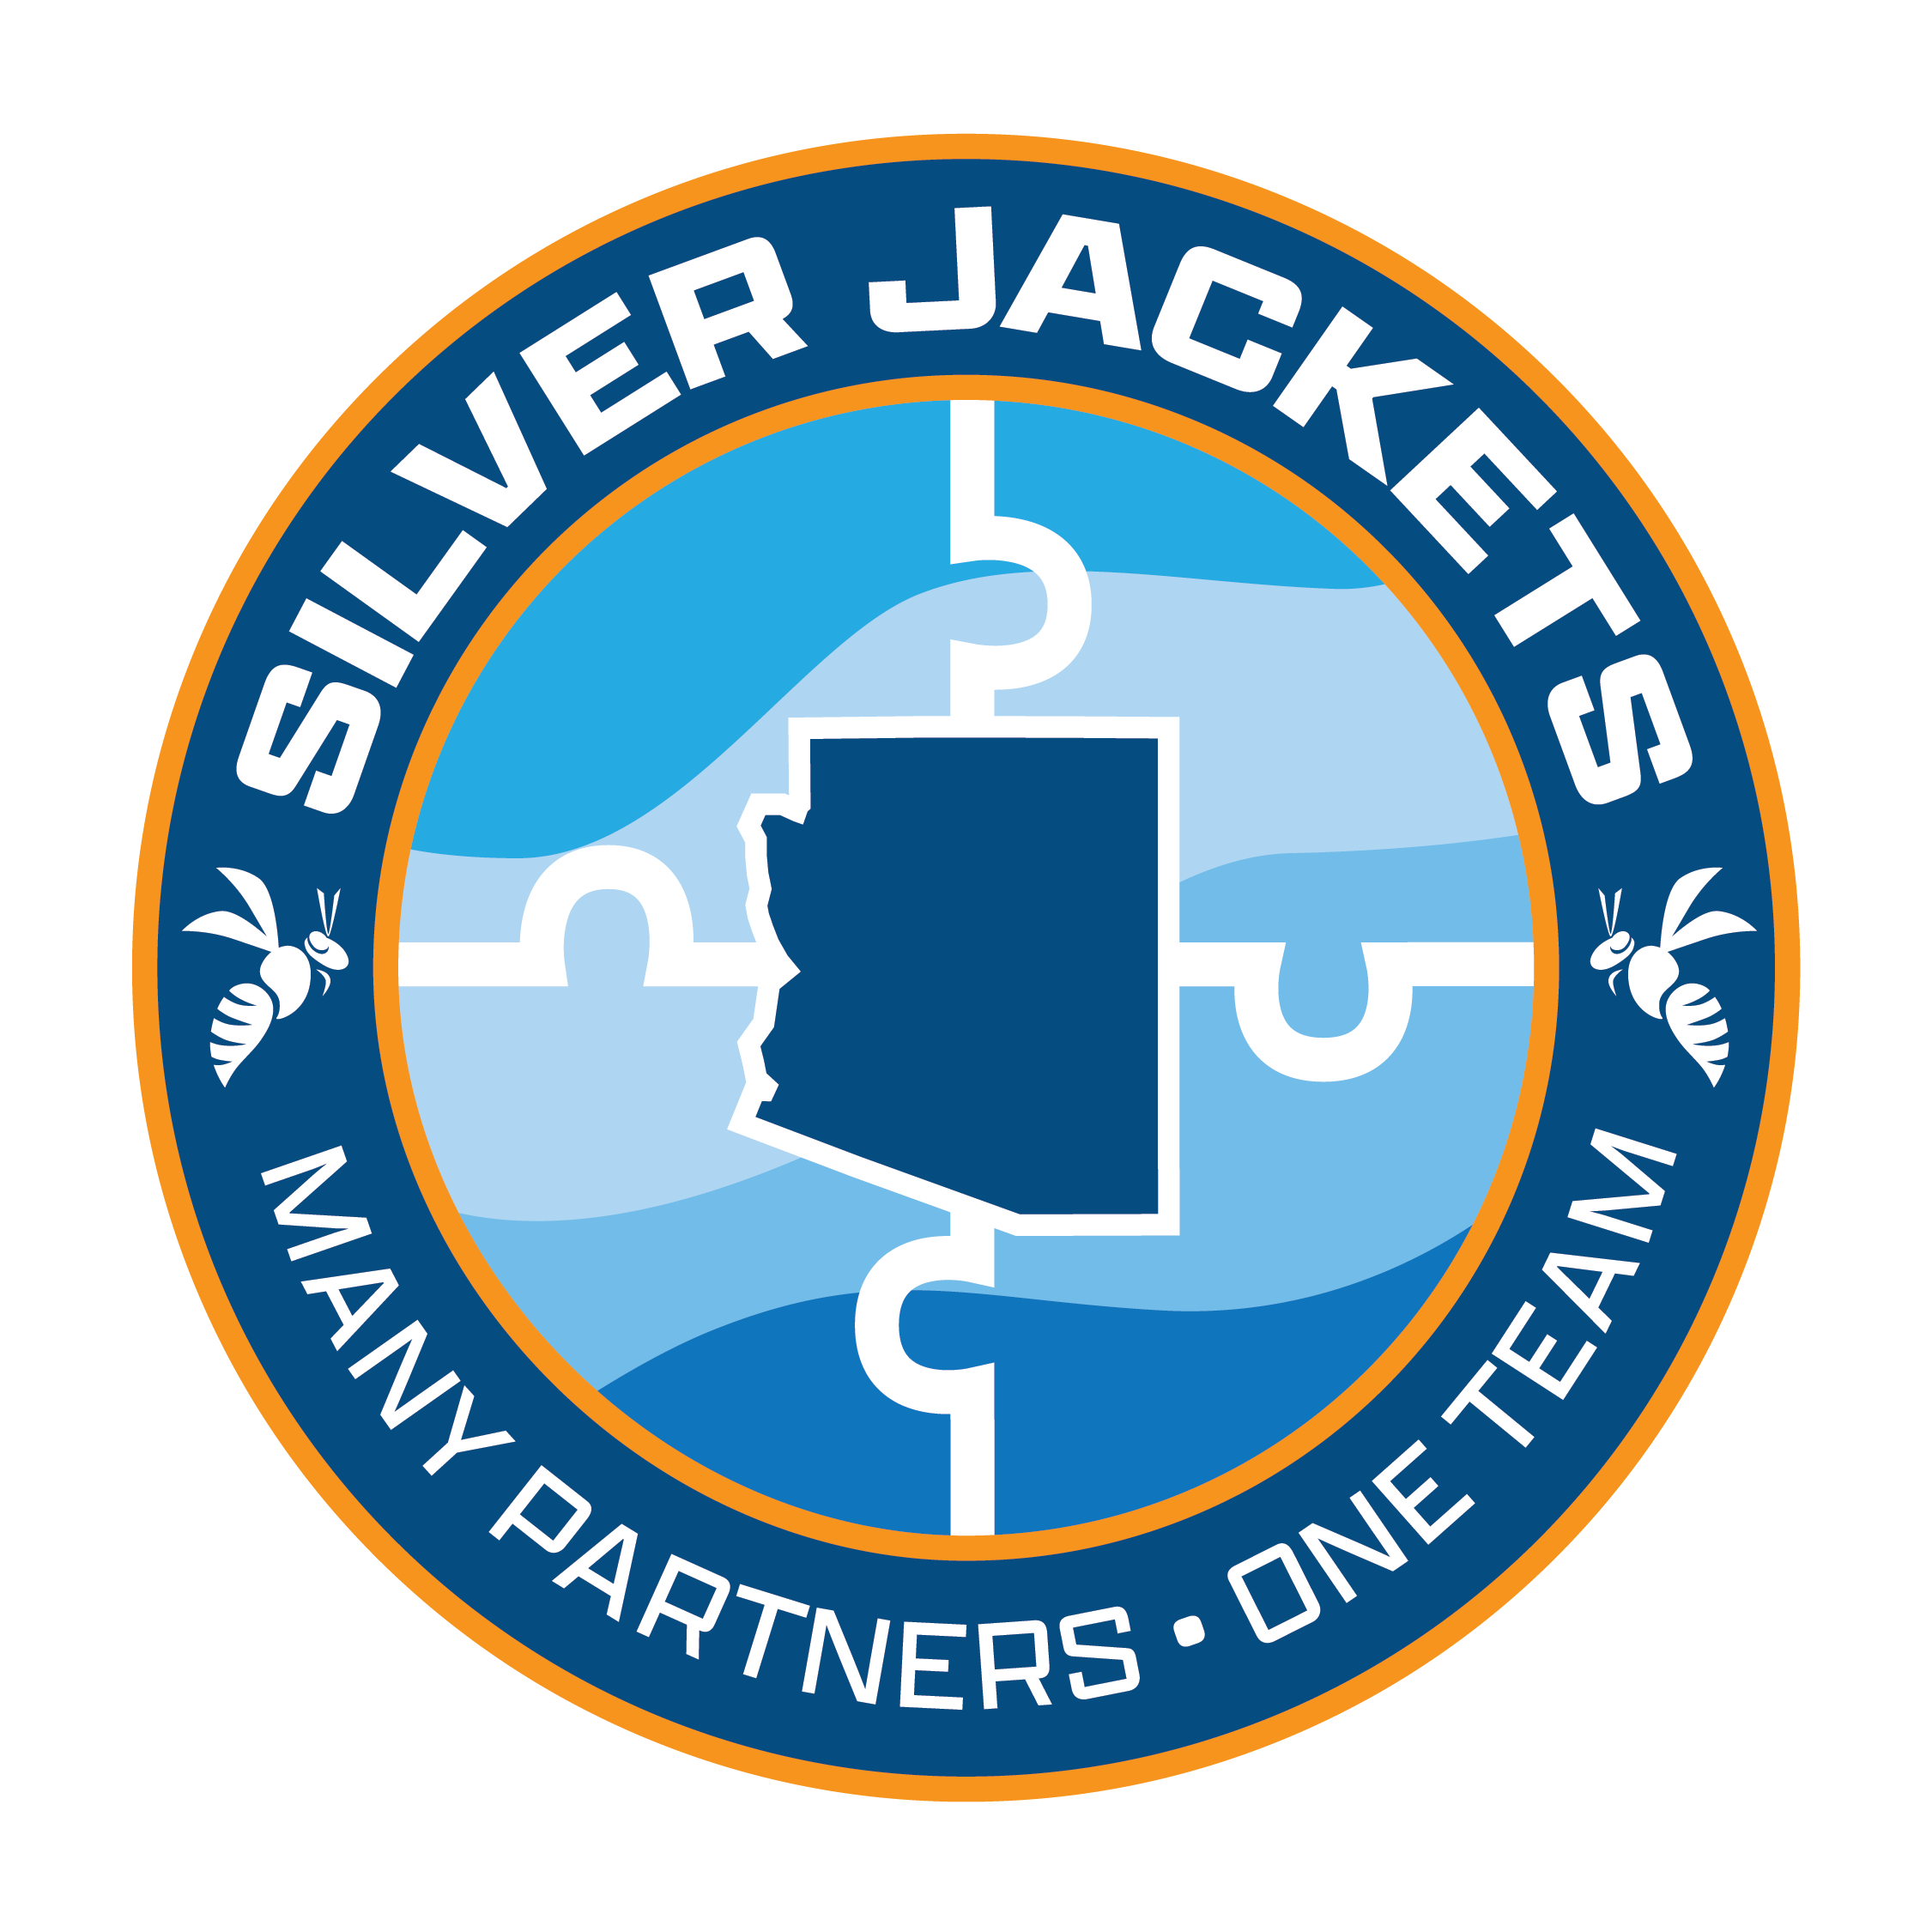 Arizona Silver Jackets logo